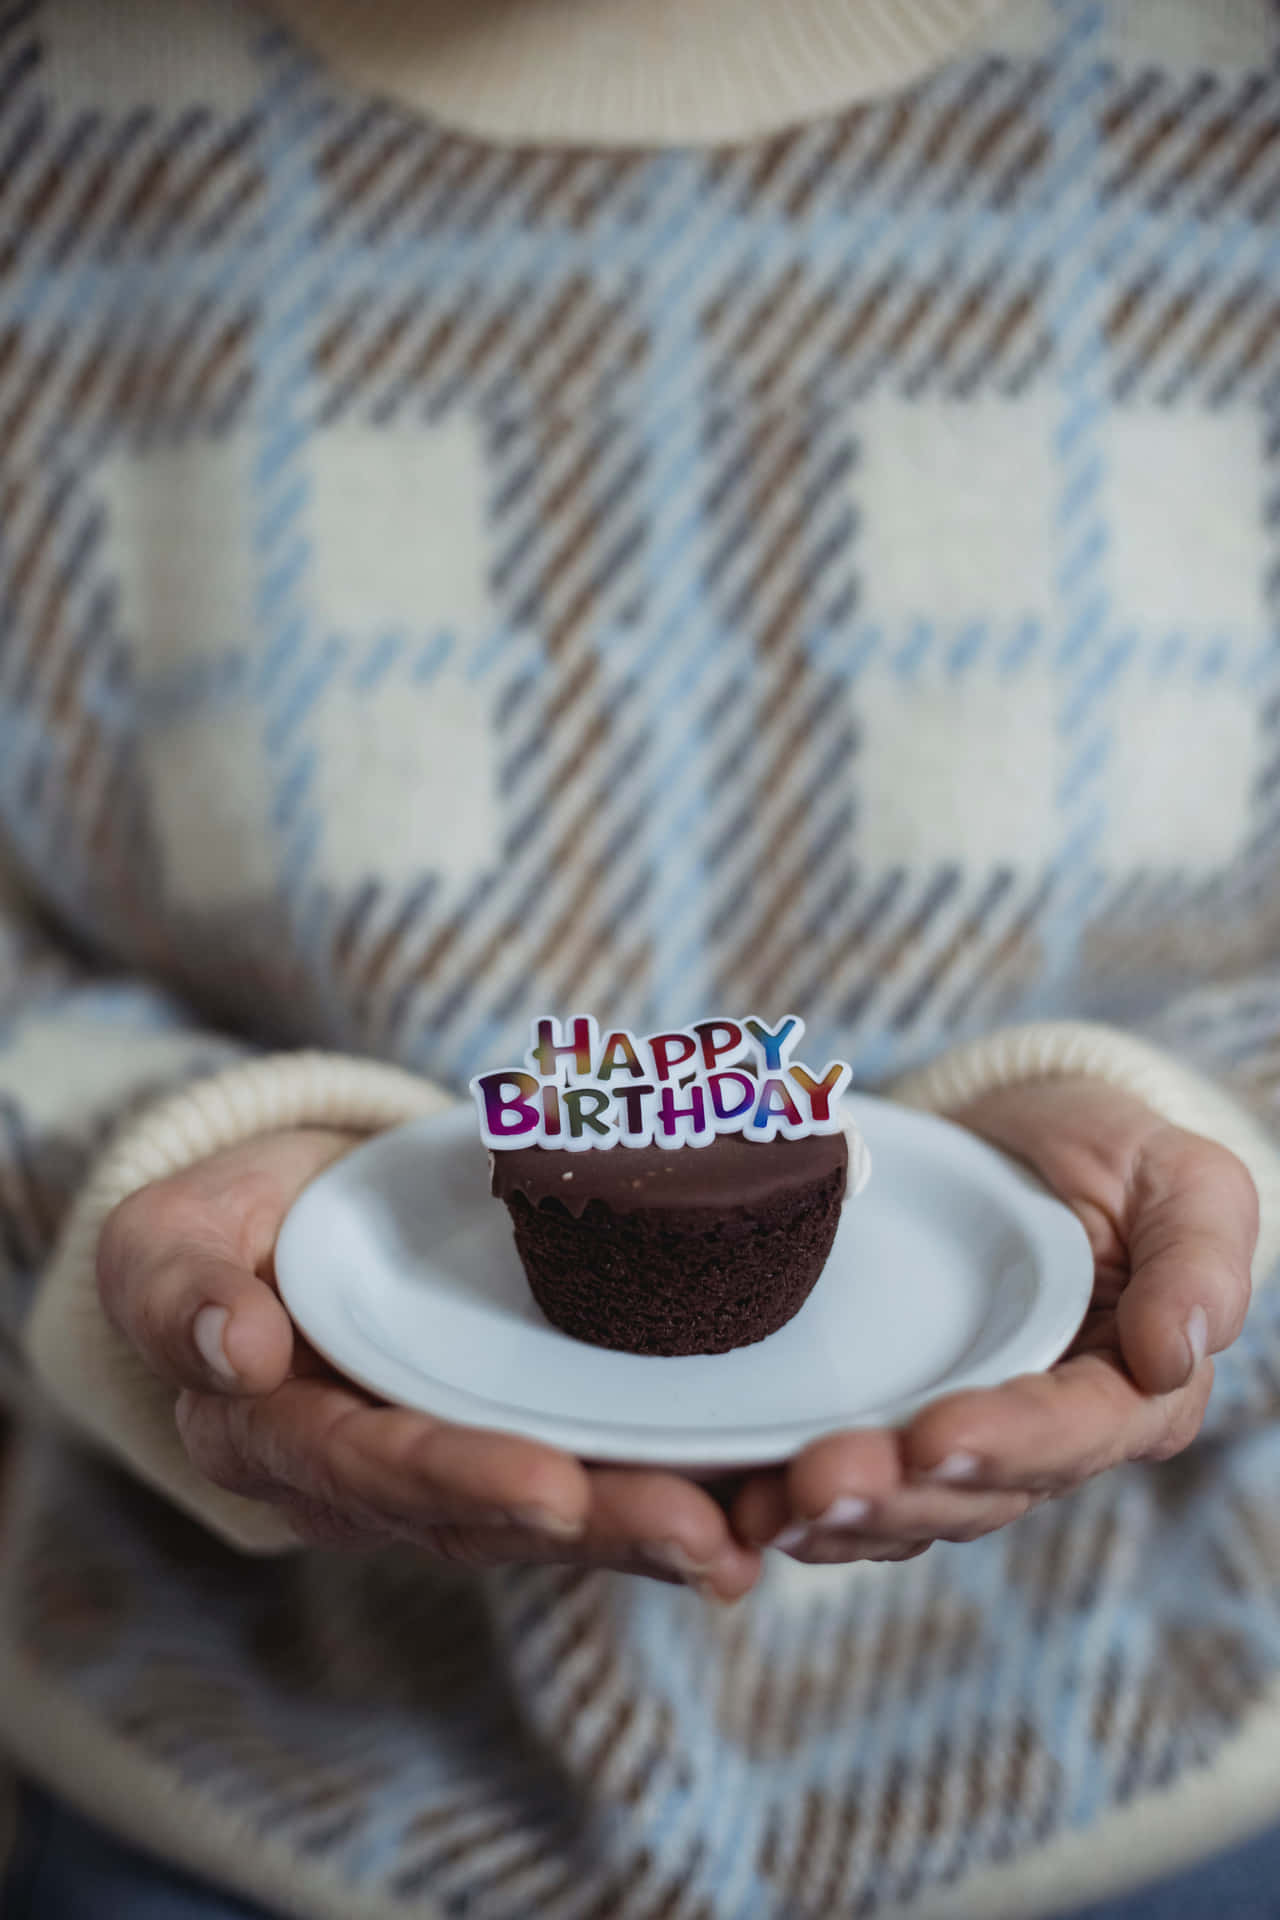 Immaginedi Un Cupcake Per Il Compleanno Felice.